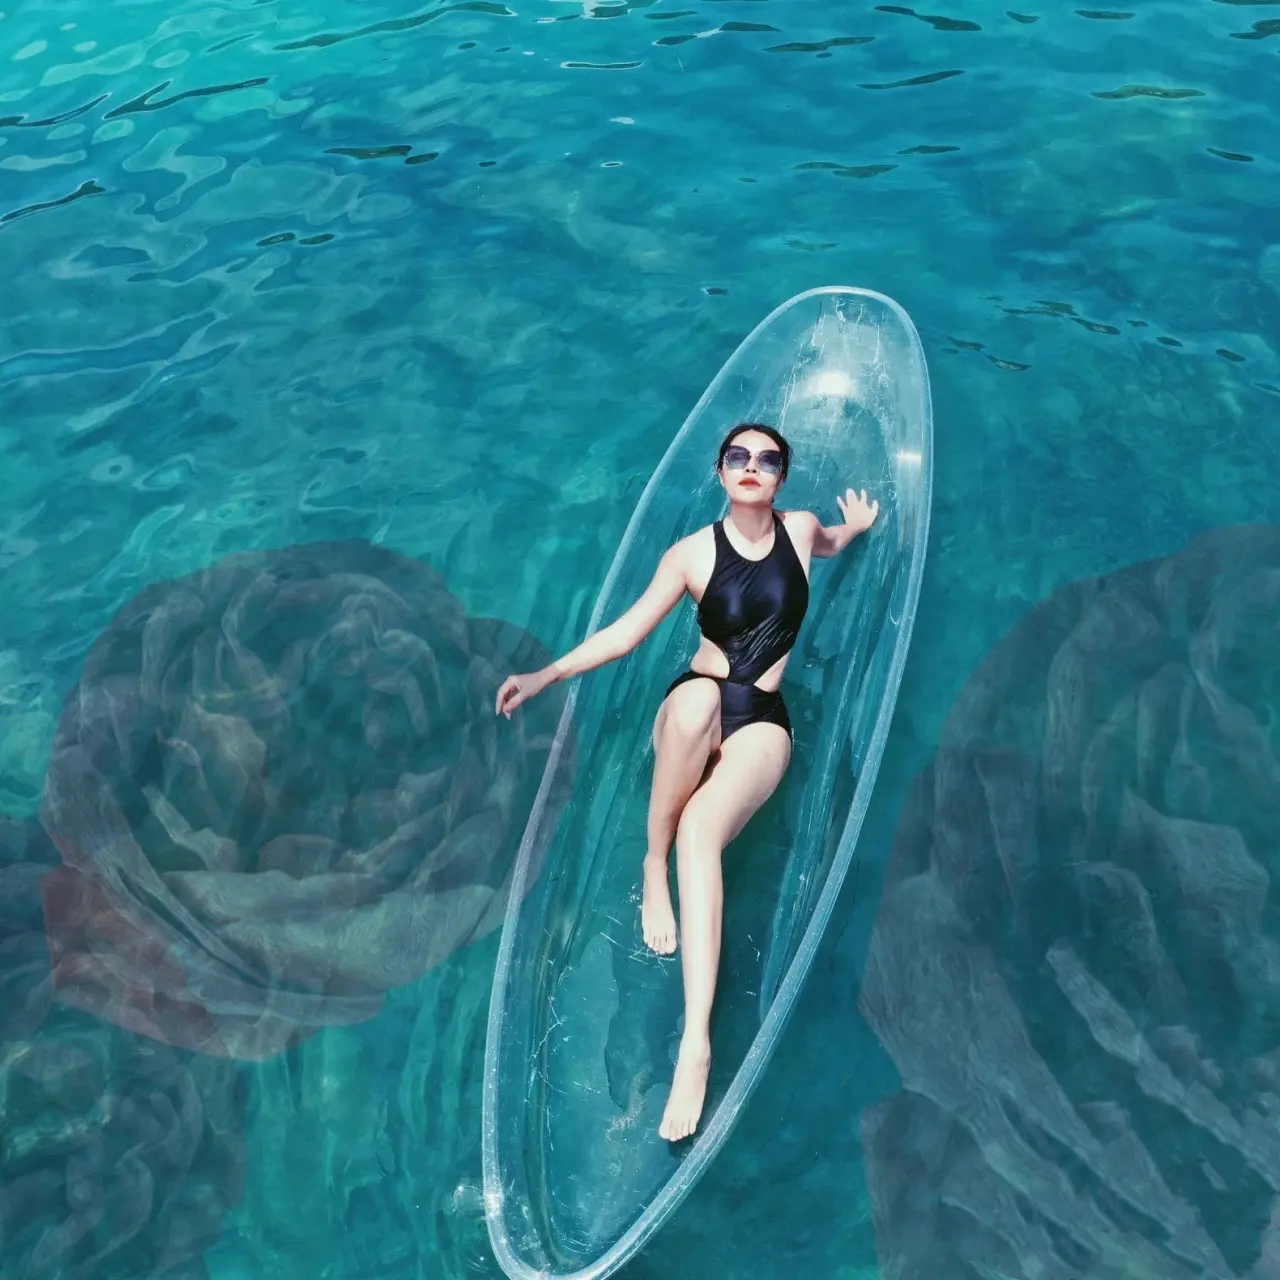 Fabricant nouveau design kayak en polycarbonate transparent/bateau de pêche transparent/canoë pc en cristal